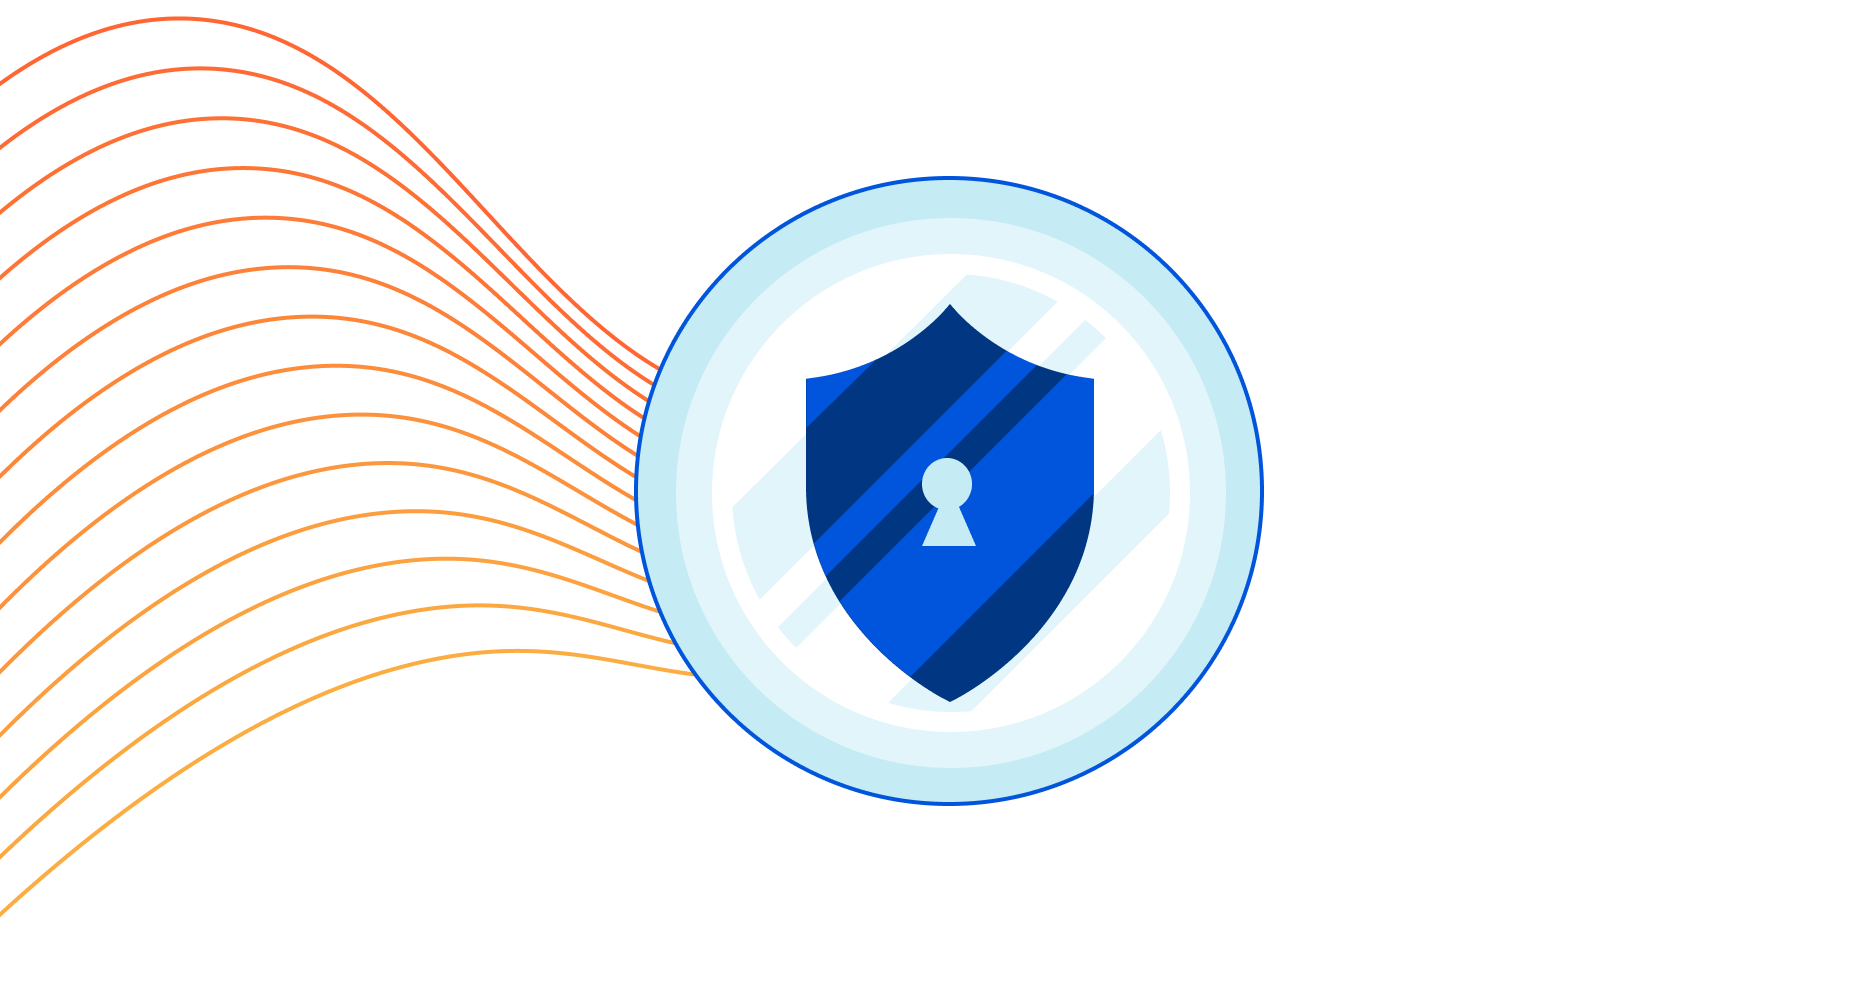 การใช้ Cloudflare สำหรับการป้องกันข้อมูลสูญหาย (Data Loss Prevention)